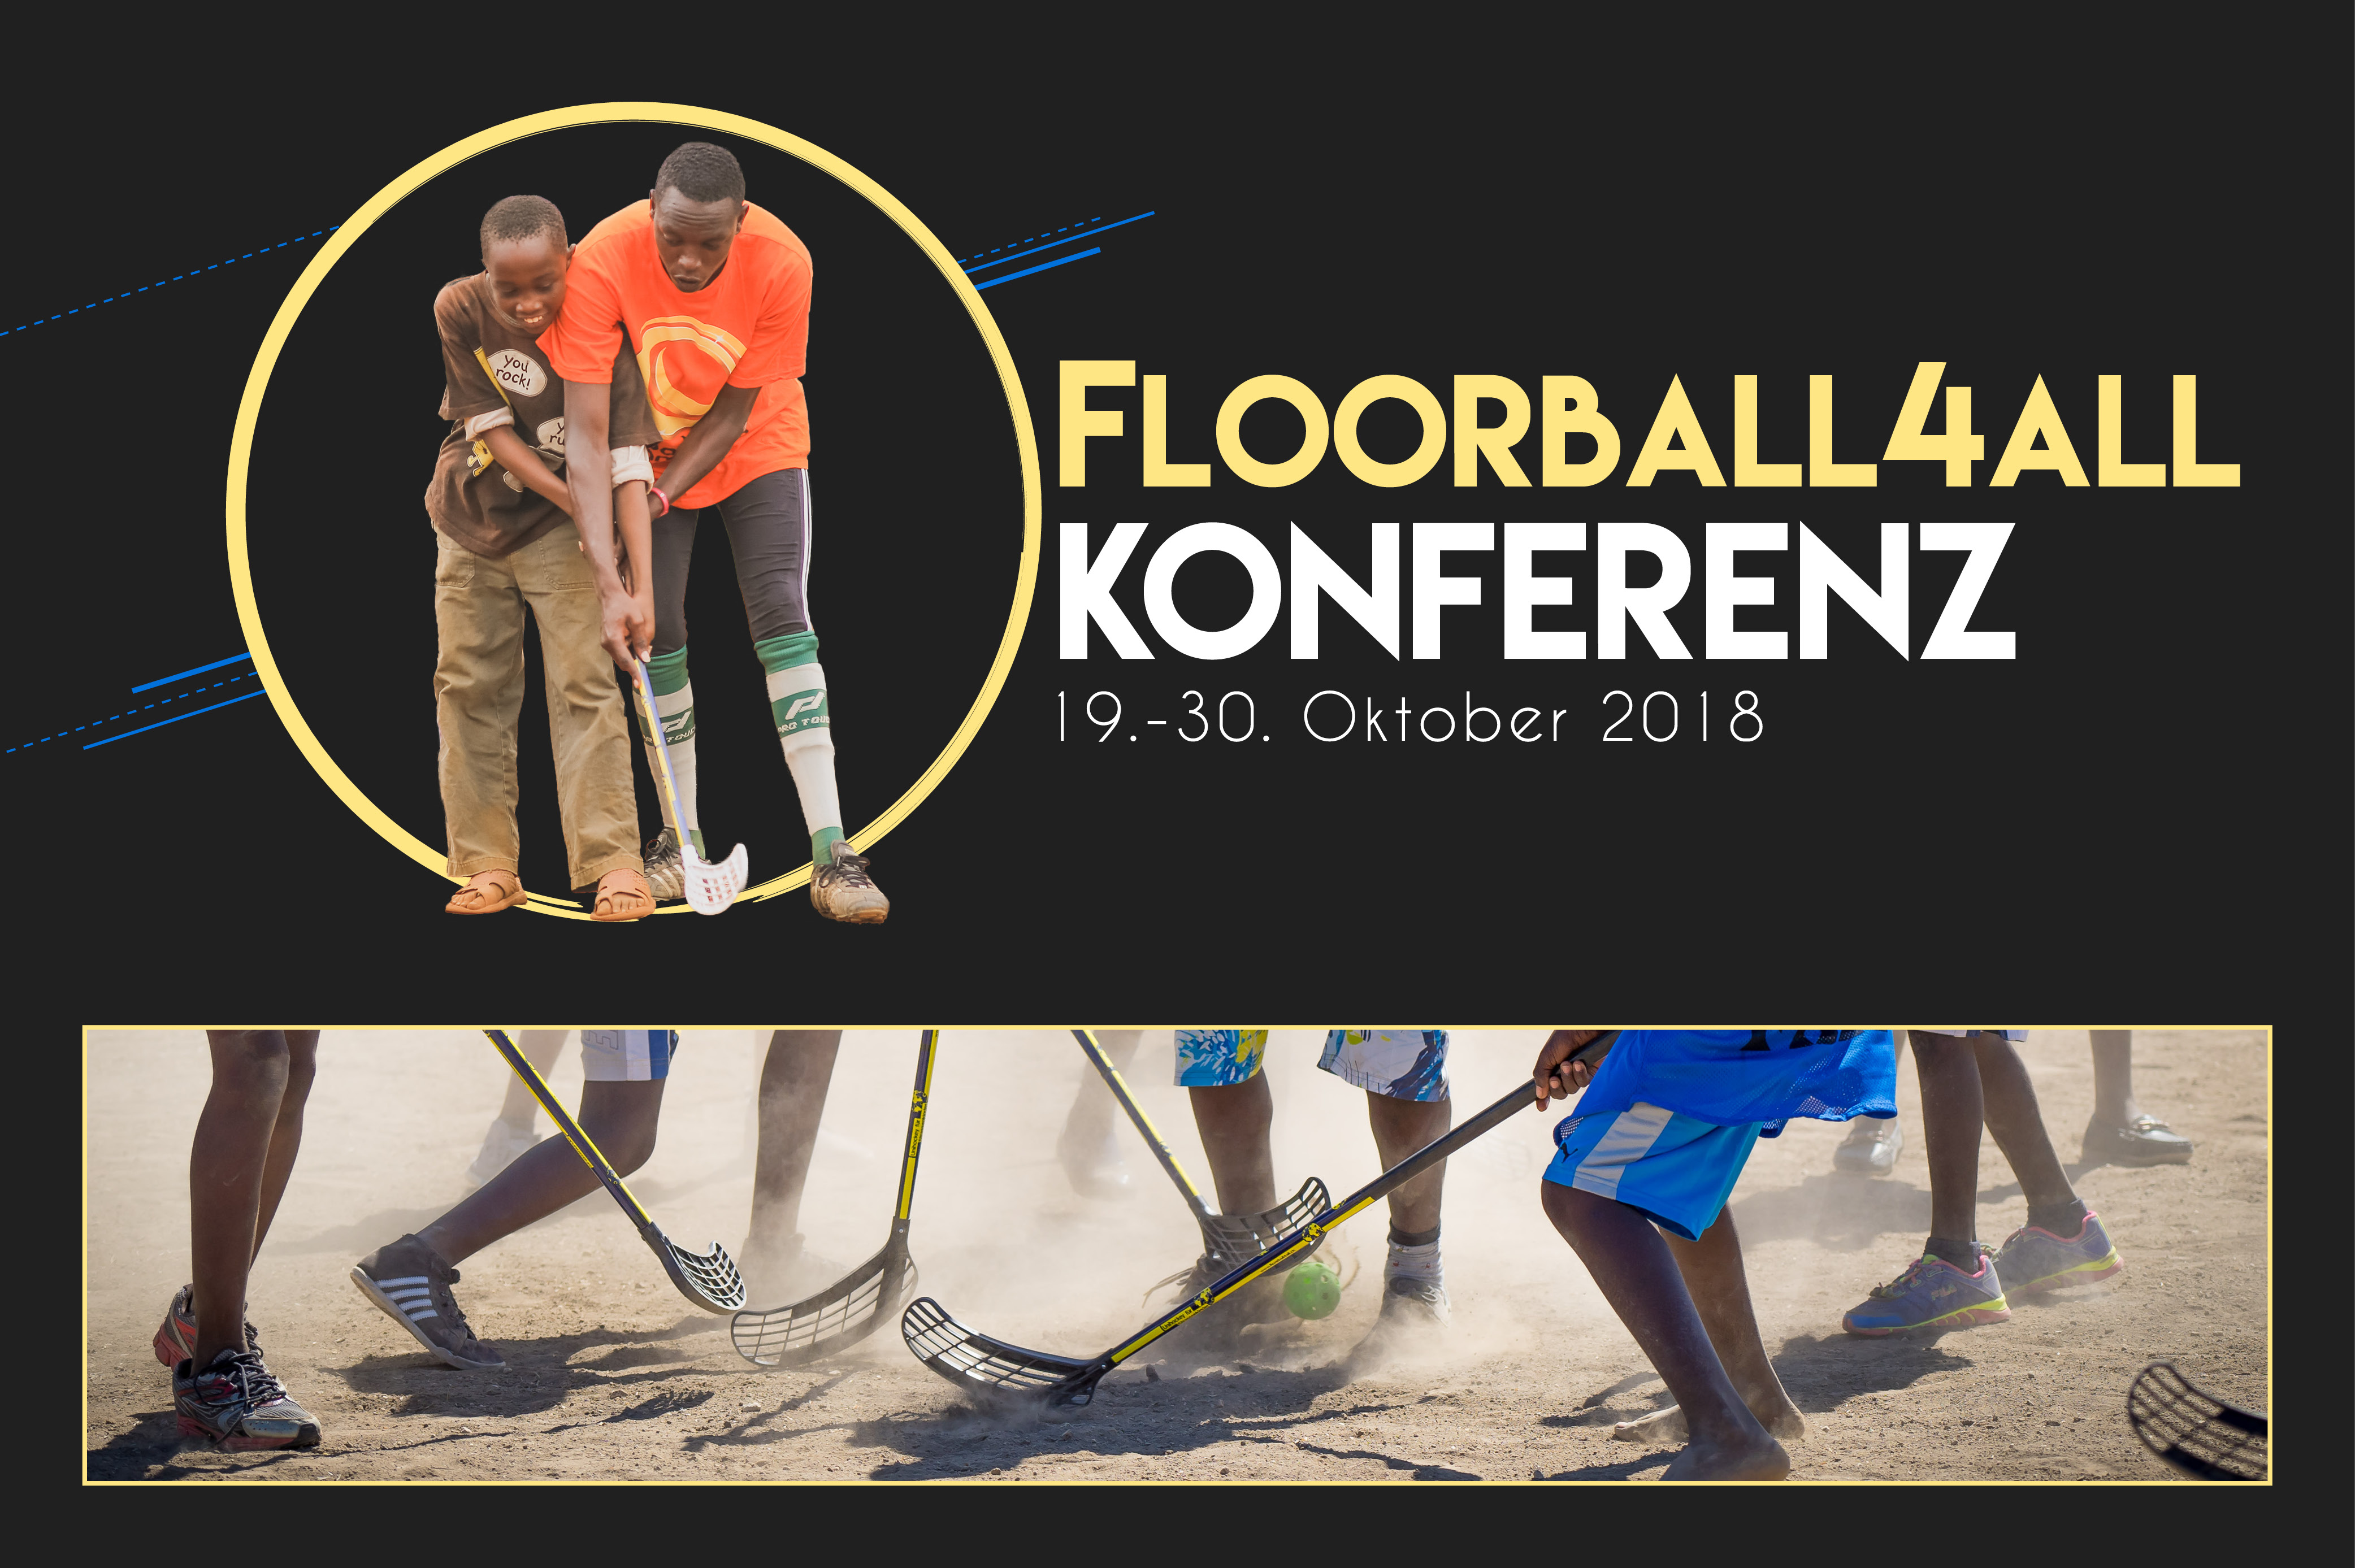  Floorball4all-Konferenz